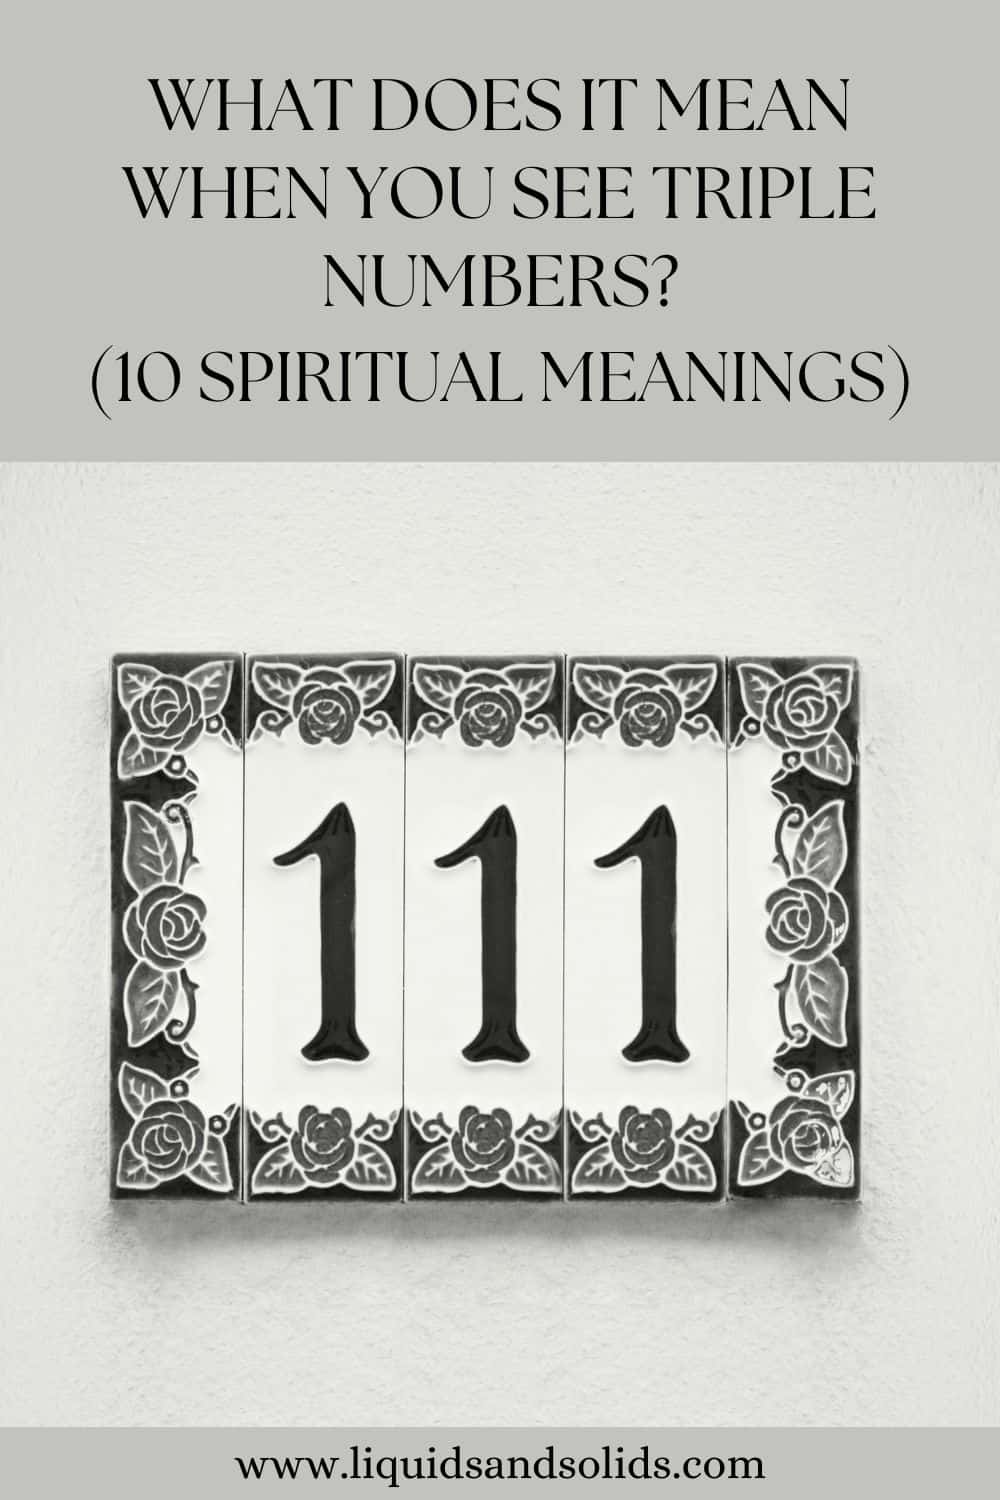  რას ნიშნავს, როდესაც ხედავთ სამმაგი რიცხვებს? (10 სულიერი მნიშვნელობა)